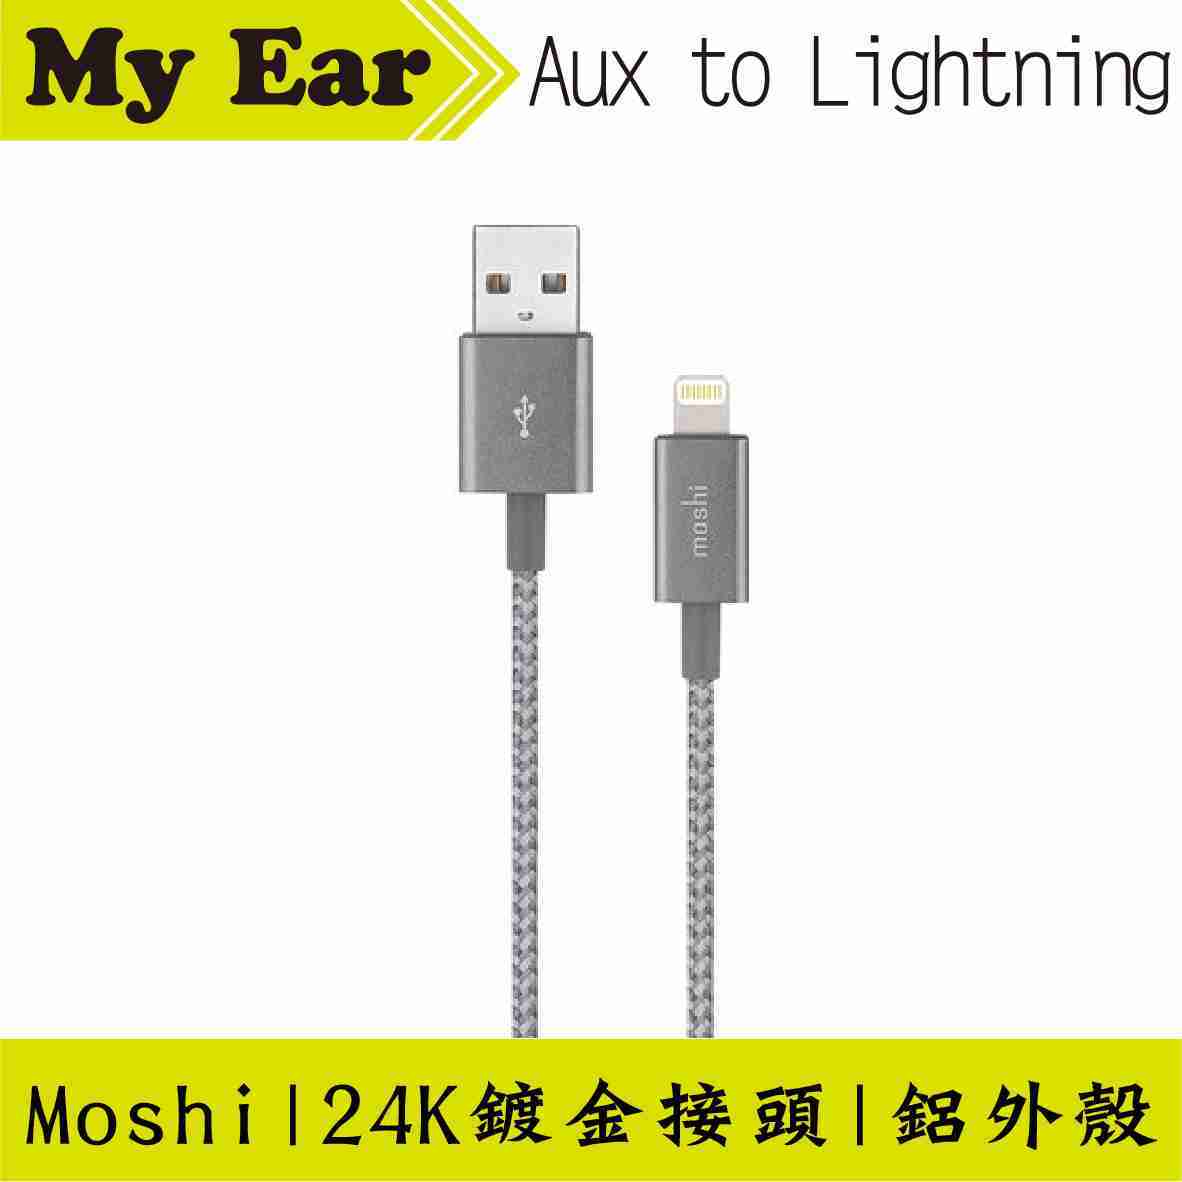 Moshi Aux to Lightning 音源編織線 蘋果 轉 3.5 | My Ear耳機專門店